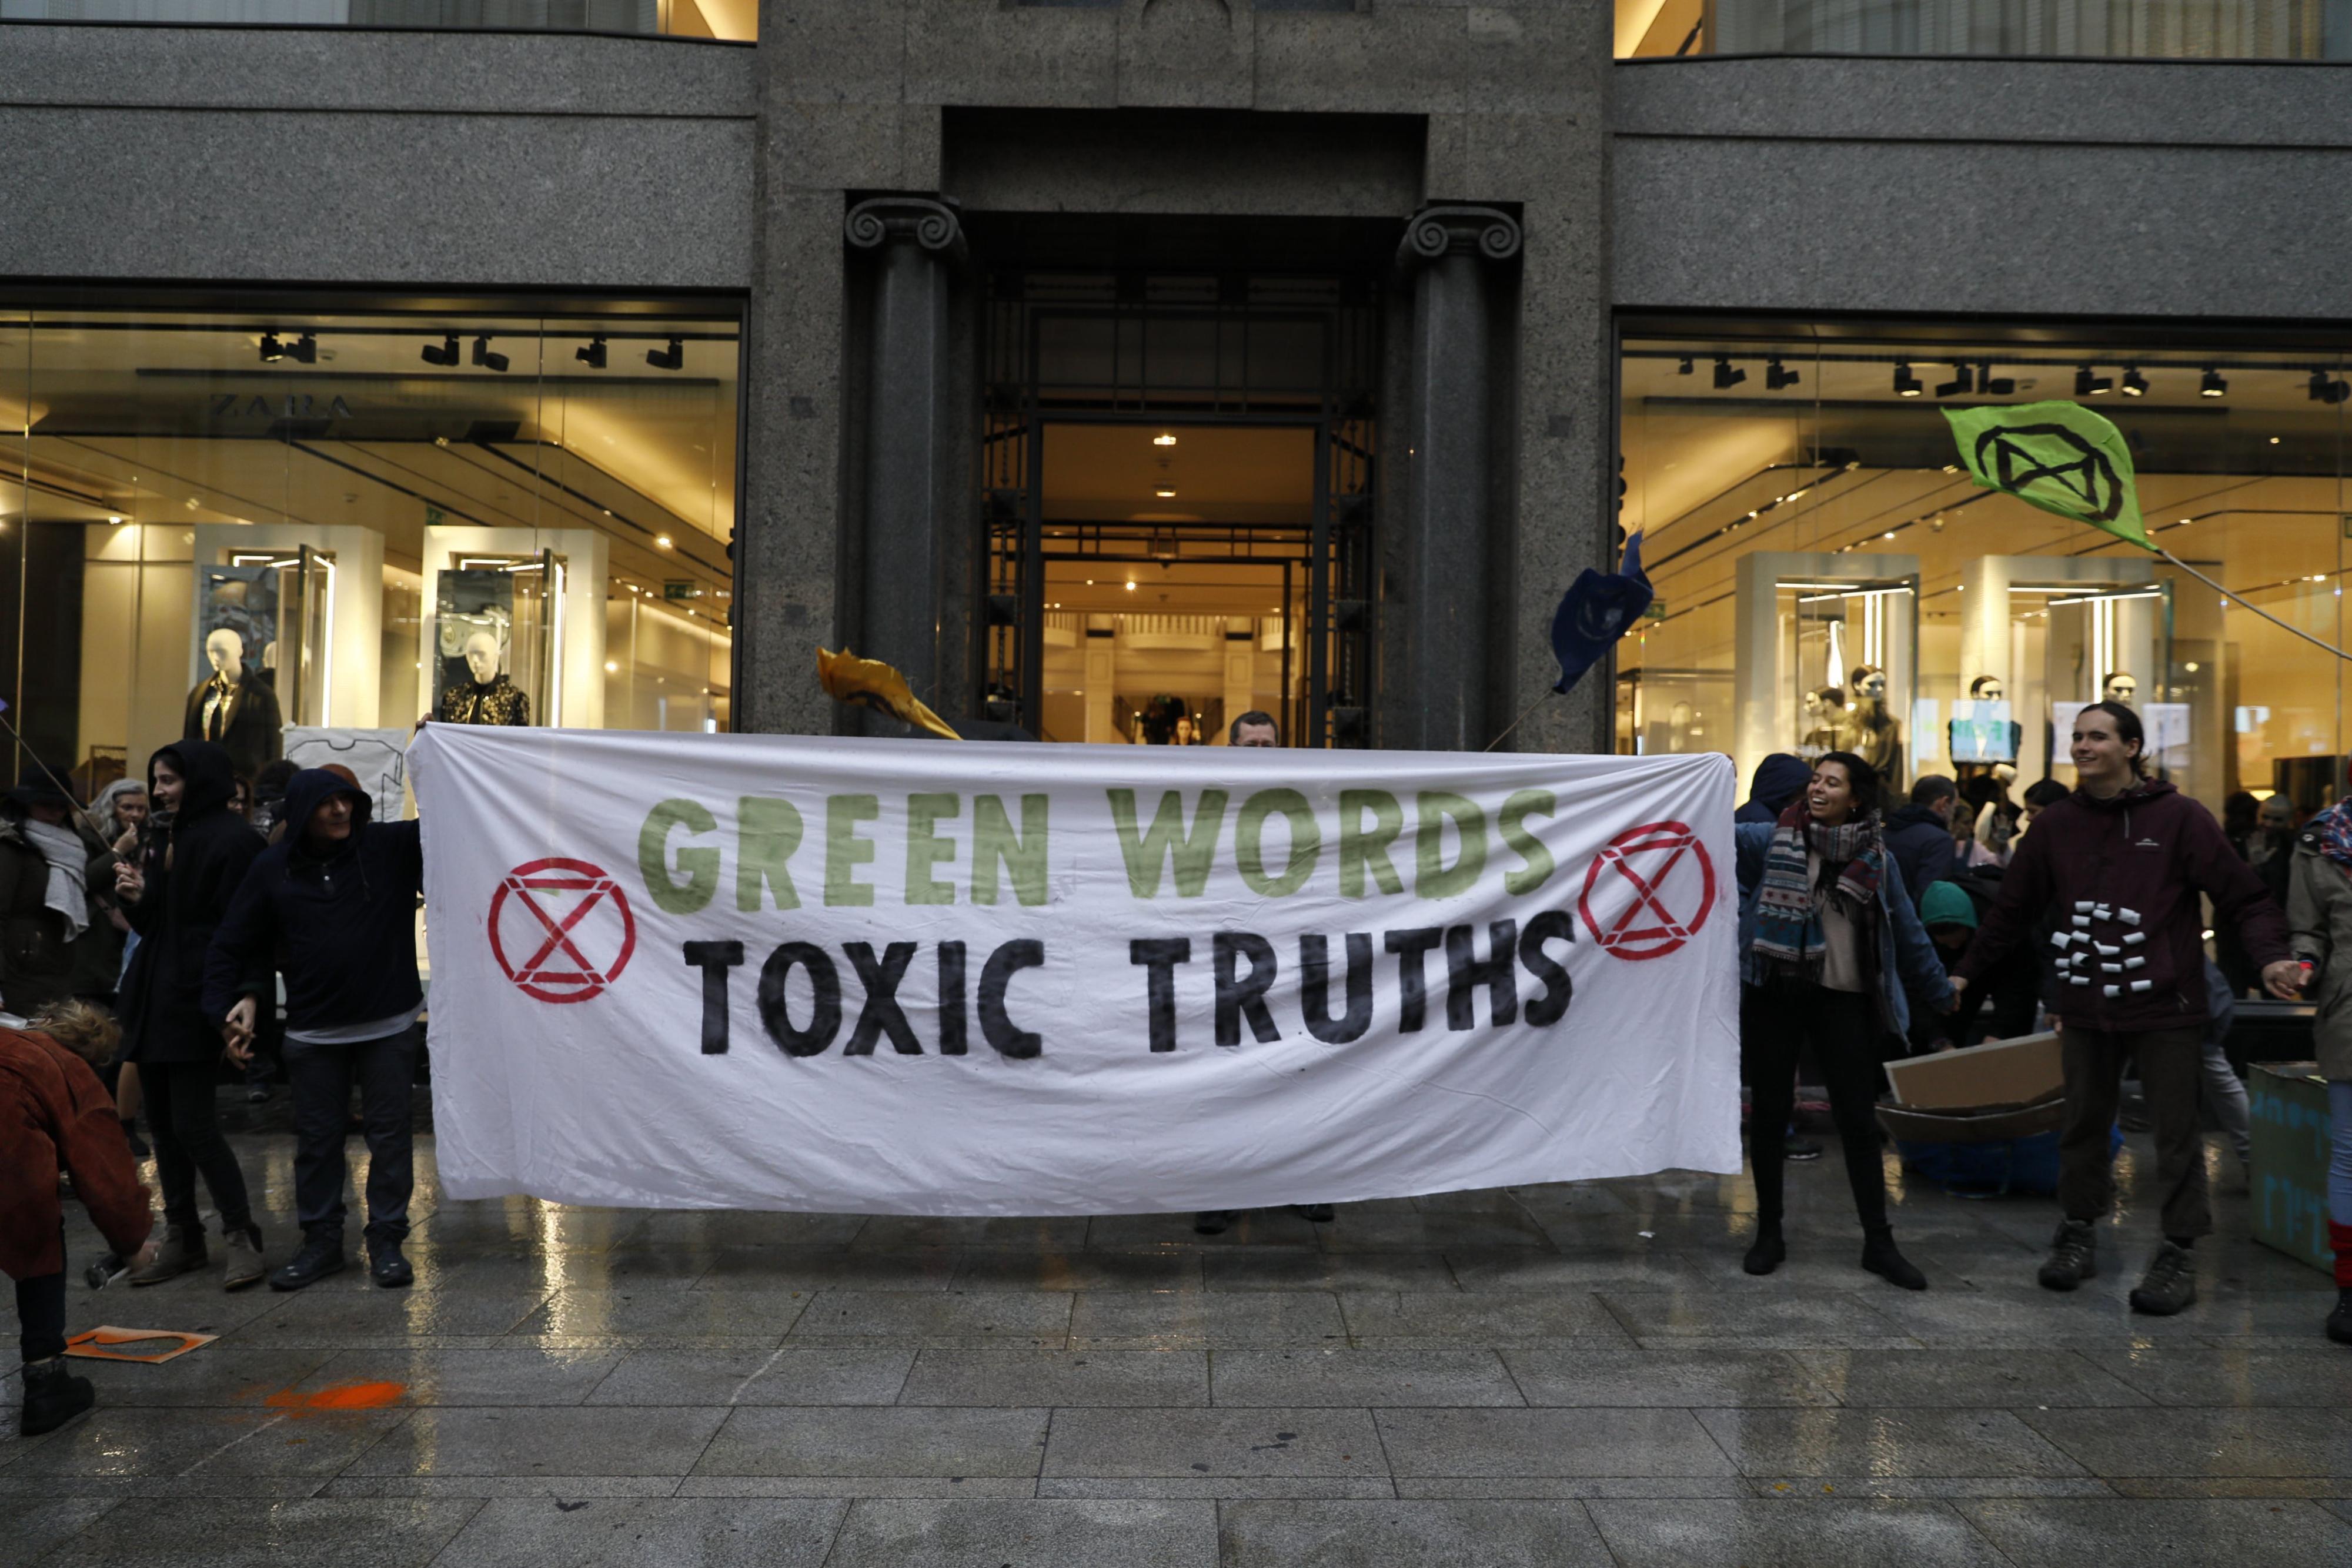 Palabras verdes, verdades tóxicas